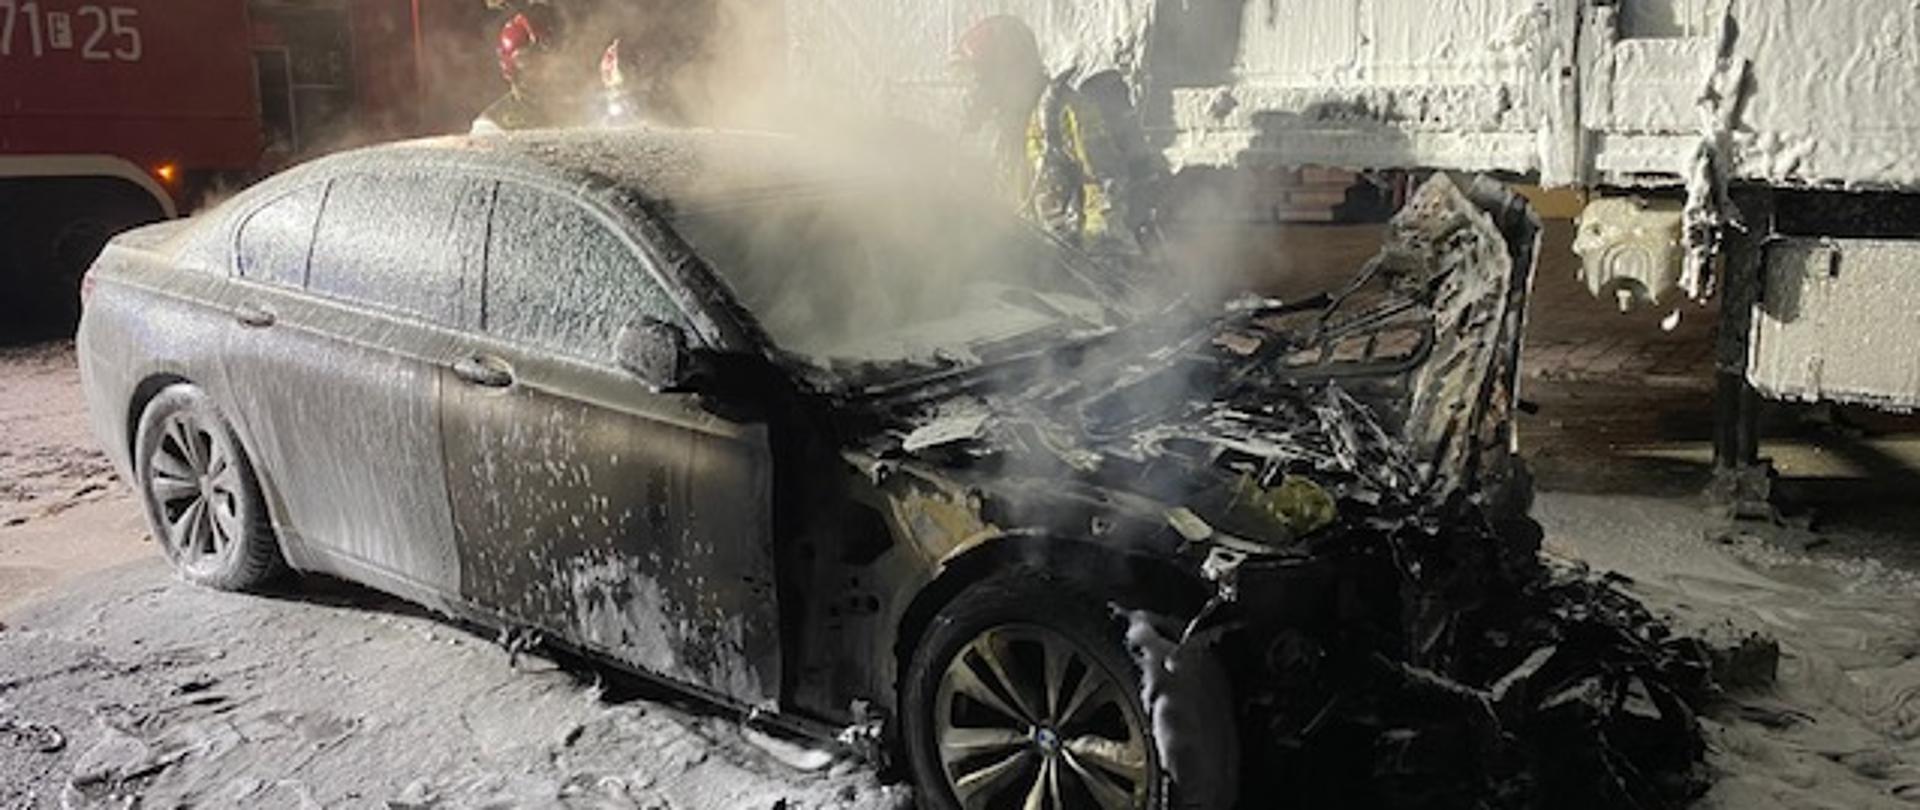 Zdjęcie przedstawia zniszczony przez pożar pojazd osobowy marki BMW. Spalona jest komora silnika obok stoi naczepa samochodu ciężarowego częściowo spalona. Oba pojazdy oblane pianą gaśniczą. W tle samochód pożarniczy oraz pracujący strażacy z JRG Międzyrzecz